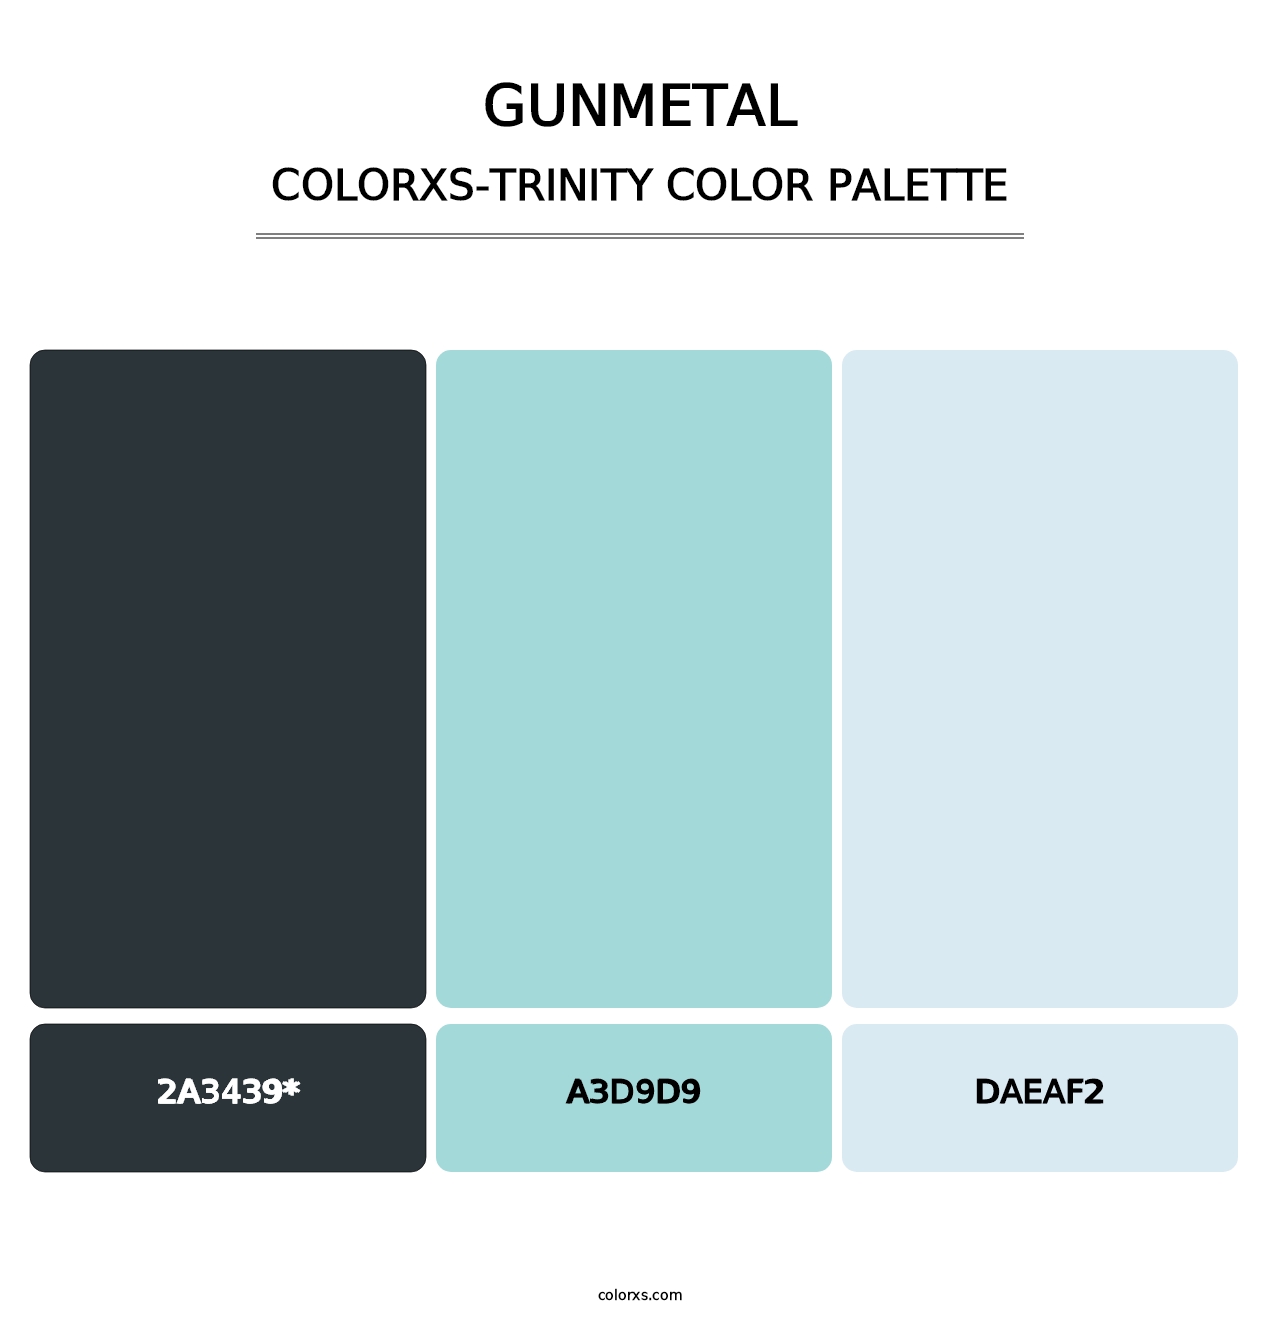 Gunmetal - Colorxs Trinity Palette